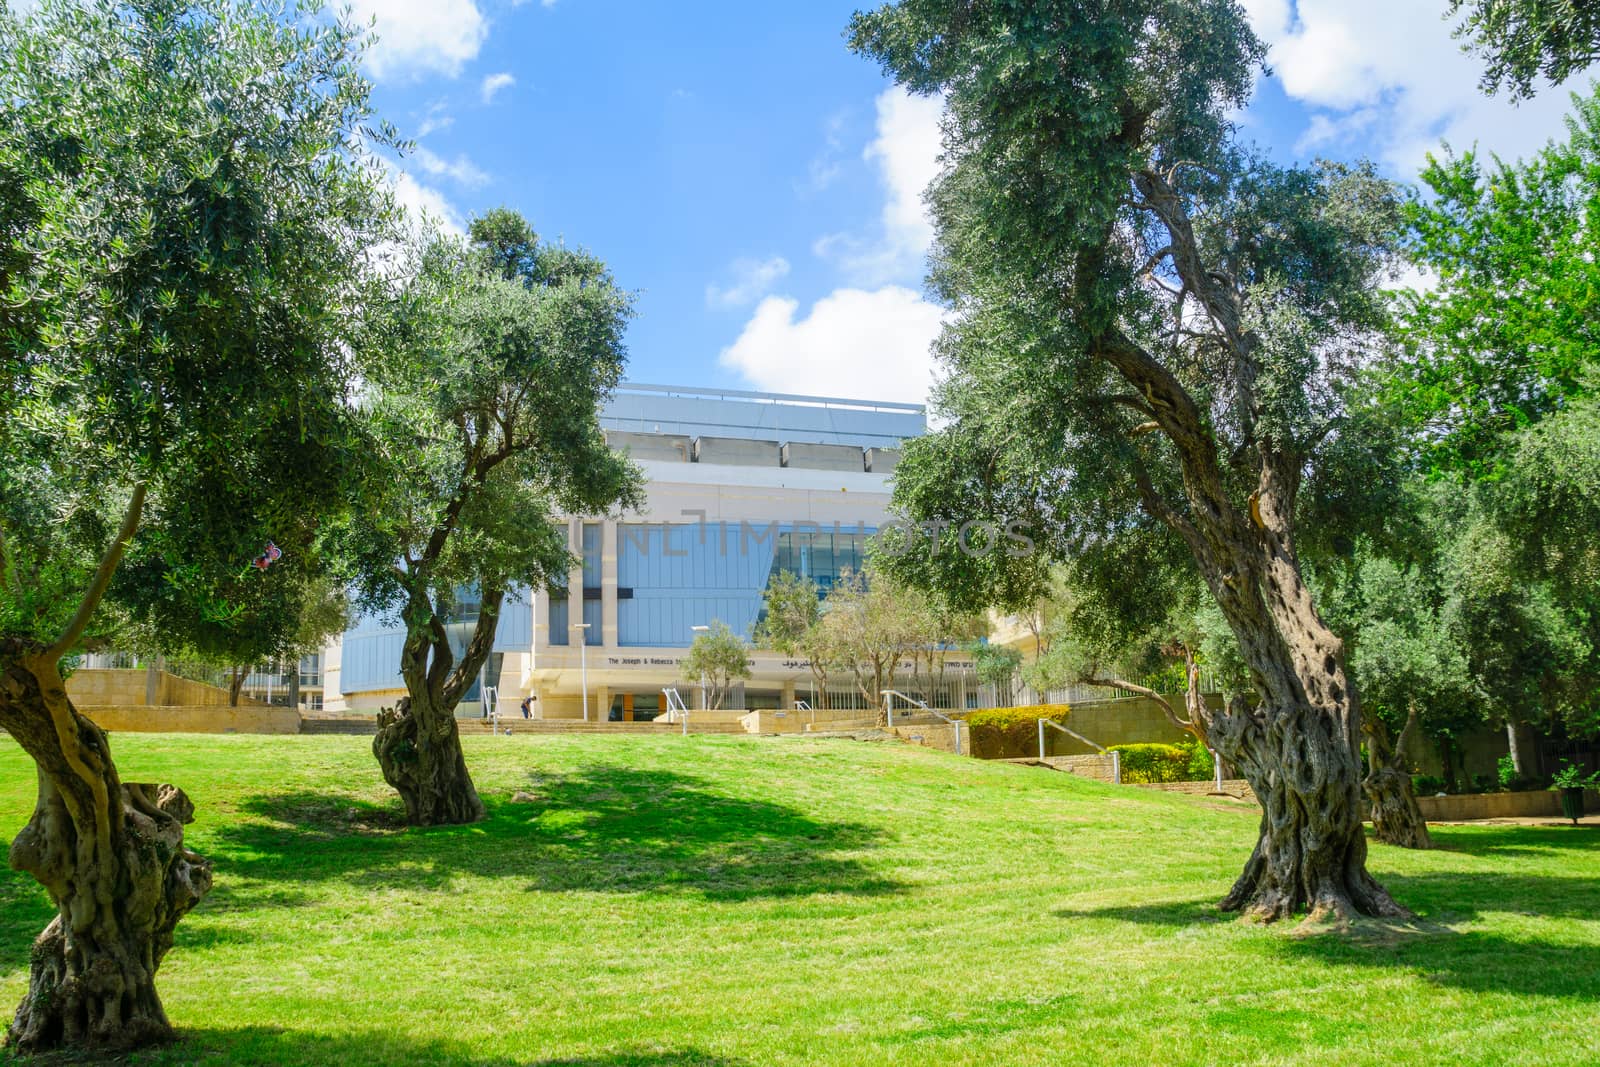 Binyamin Garden in Haifa by RnDmS